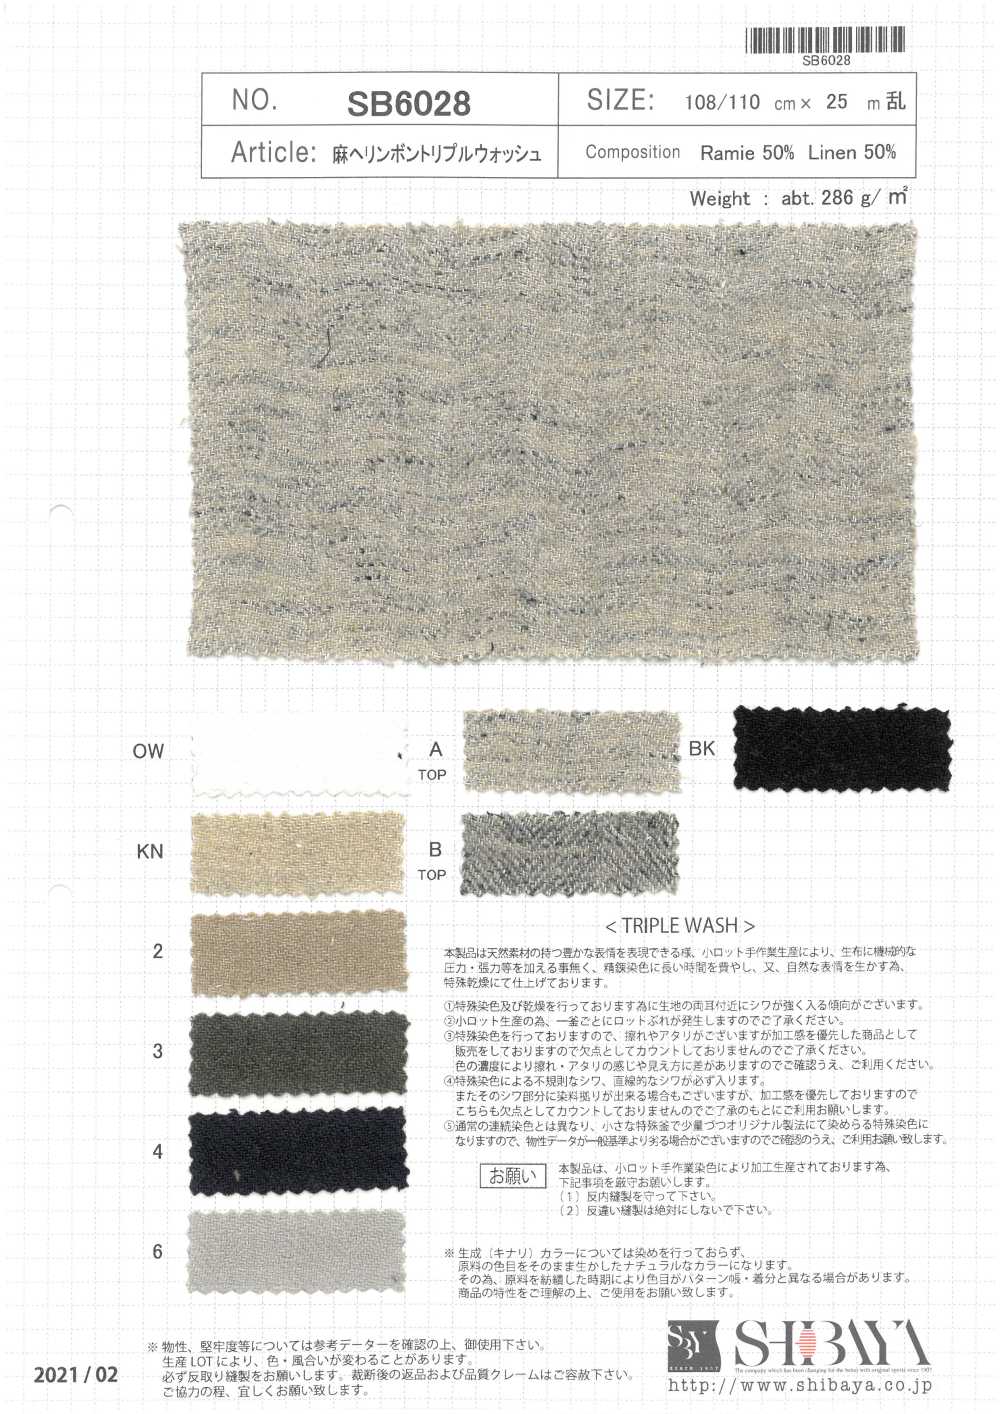 SB6028 Leinen Mit Fischgrätmuster, Dreifach Gewaschen[Textilgewebe] SHIBAYA